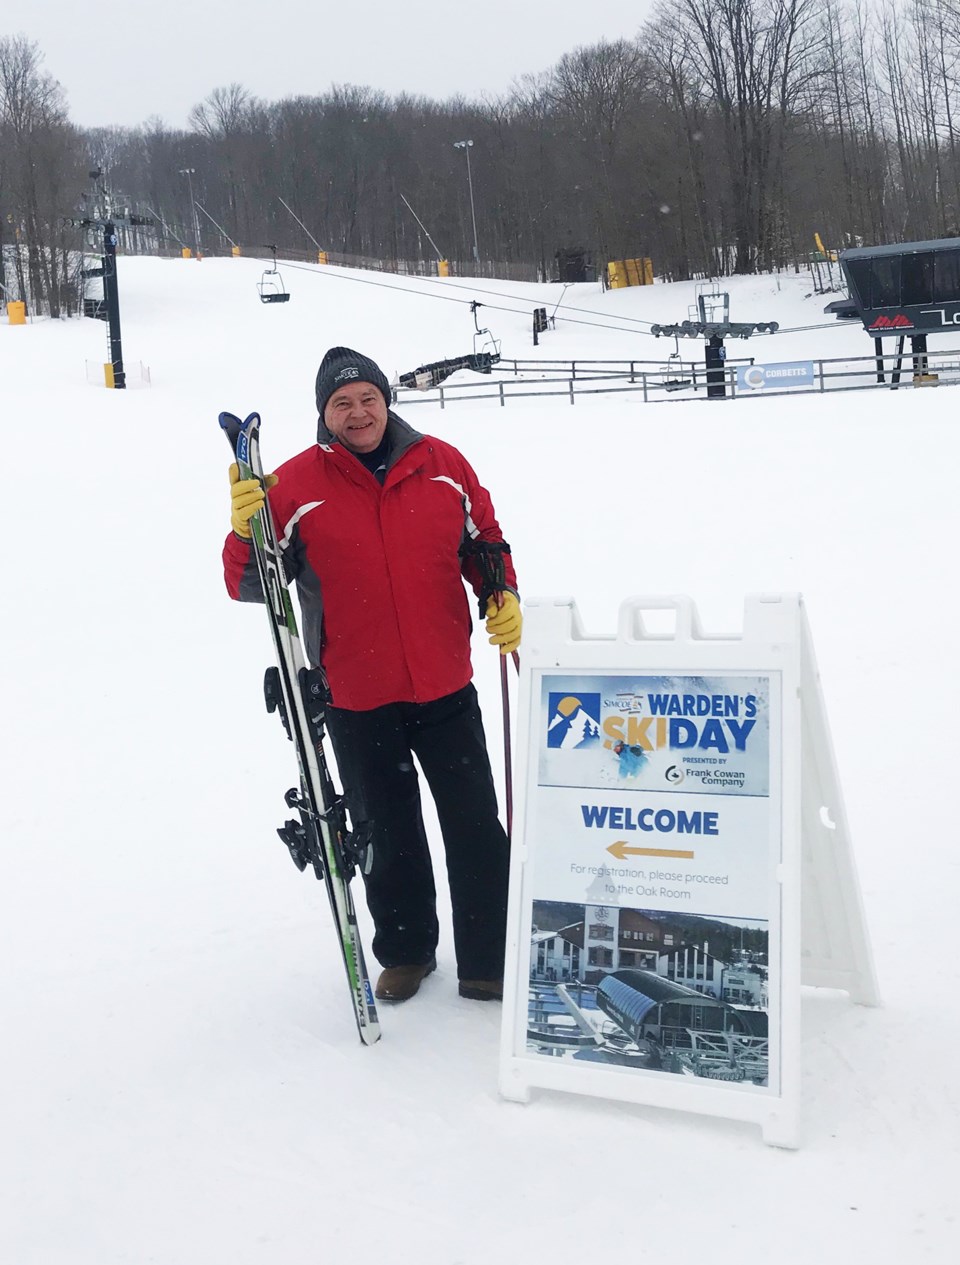 Warden's Ski Day - Warden George Cornell